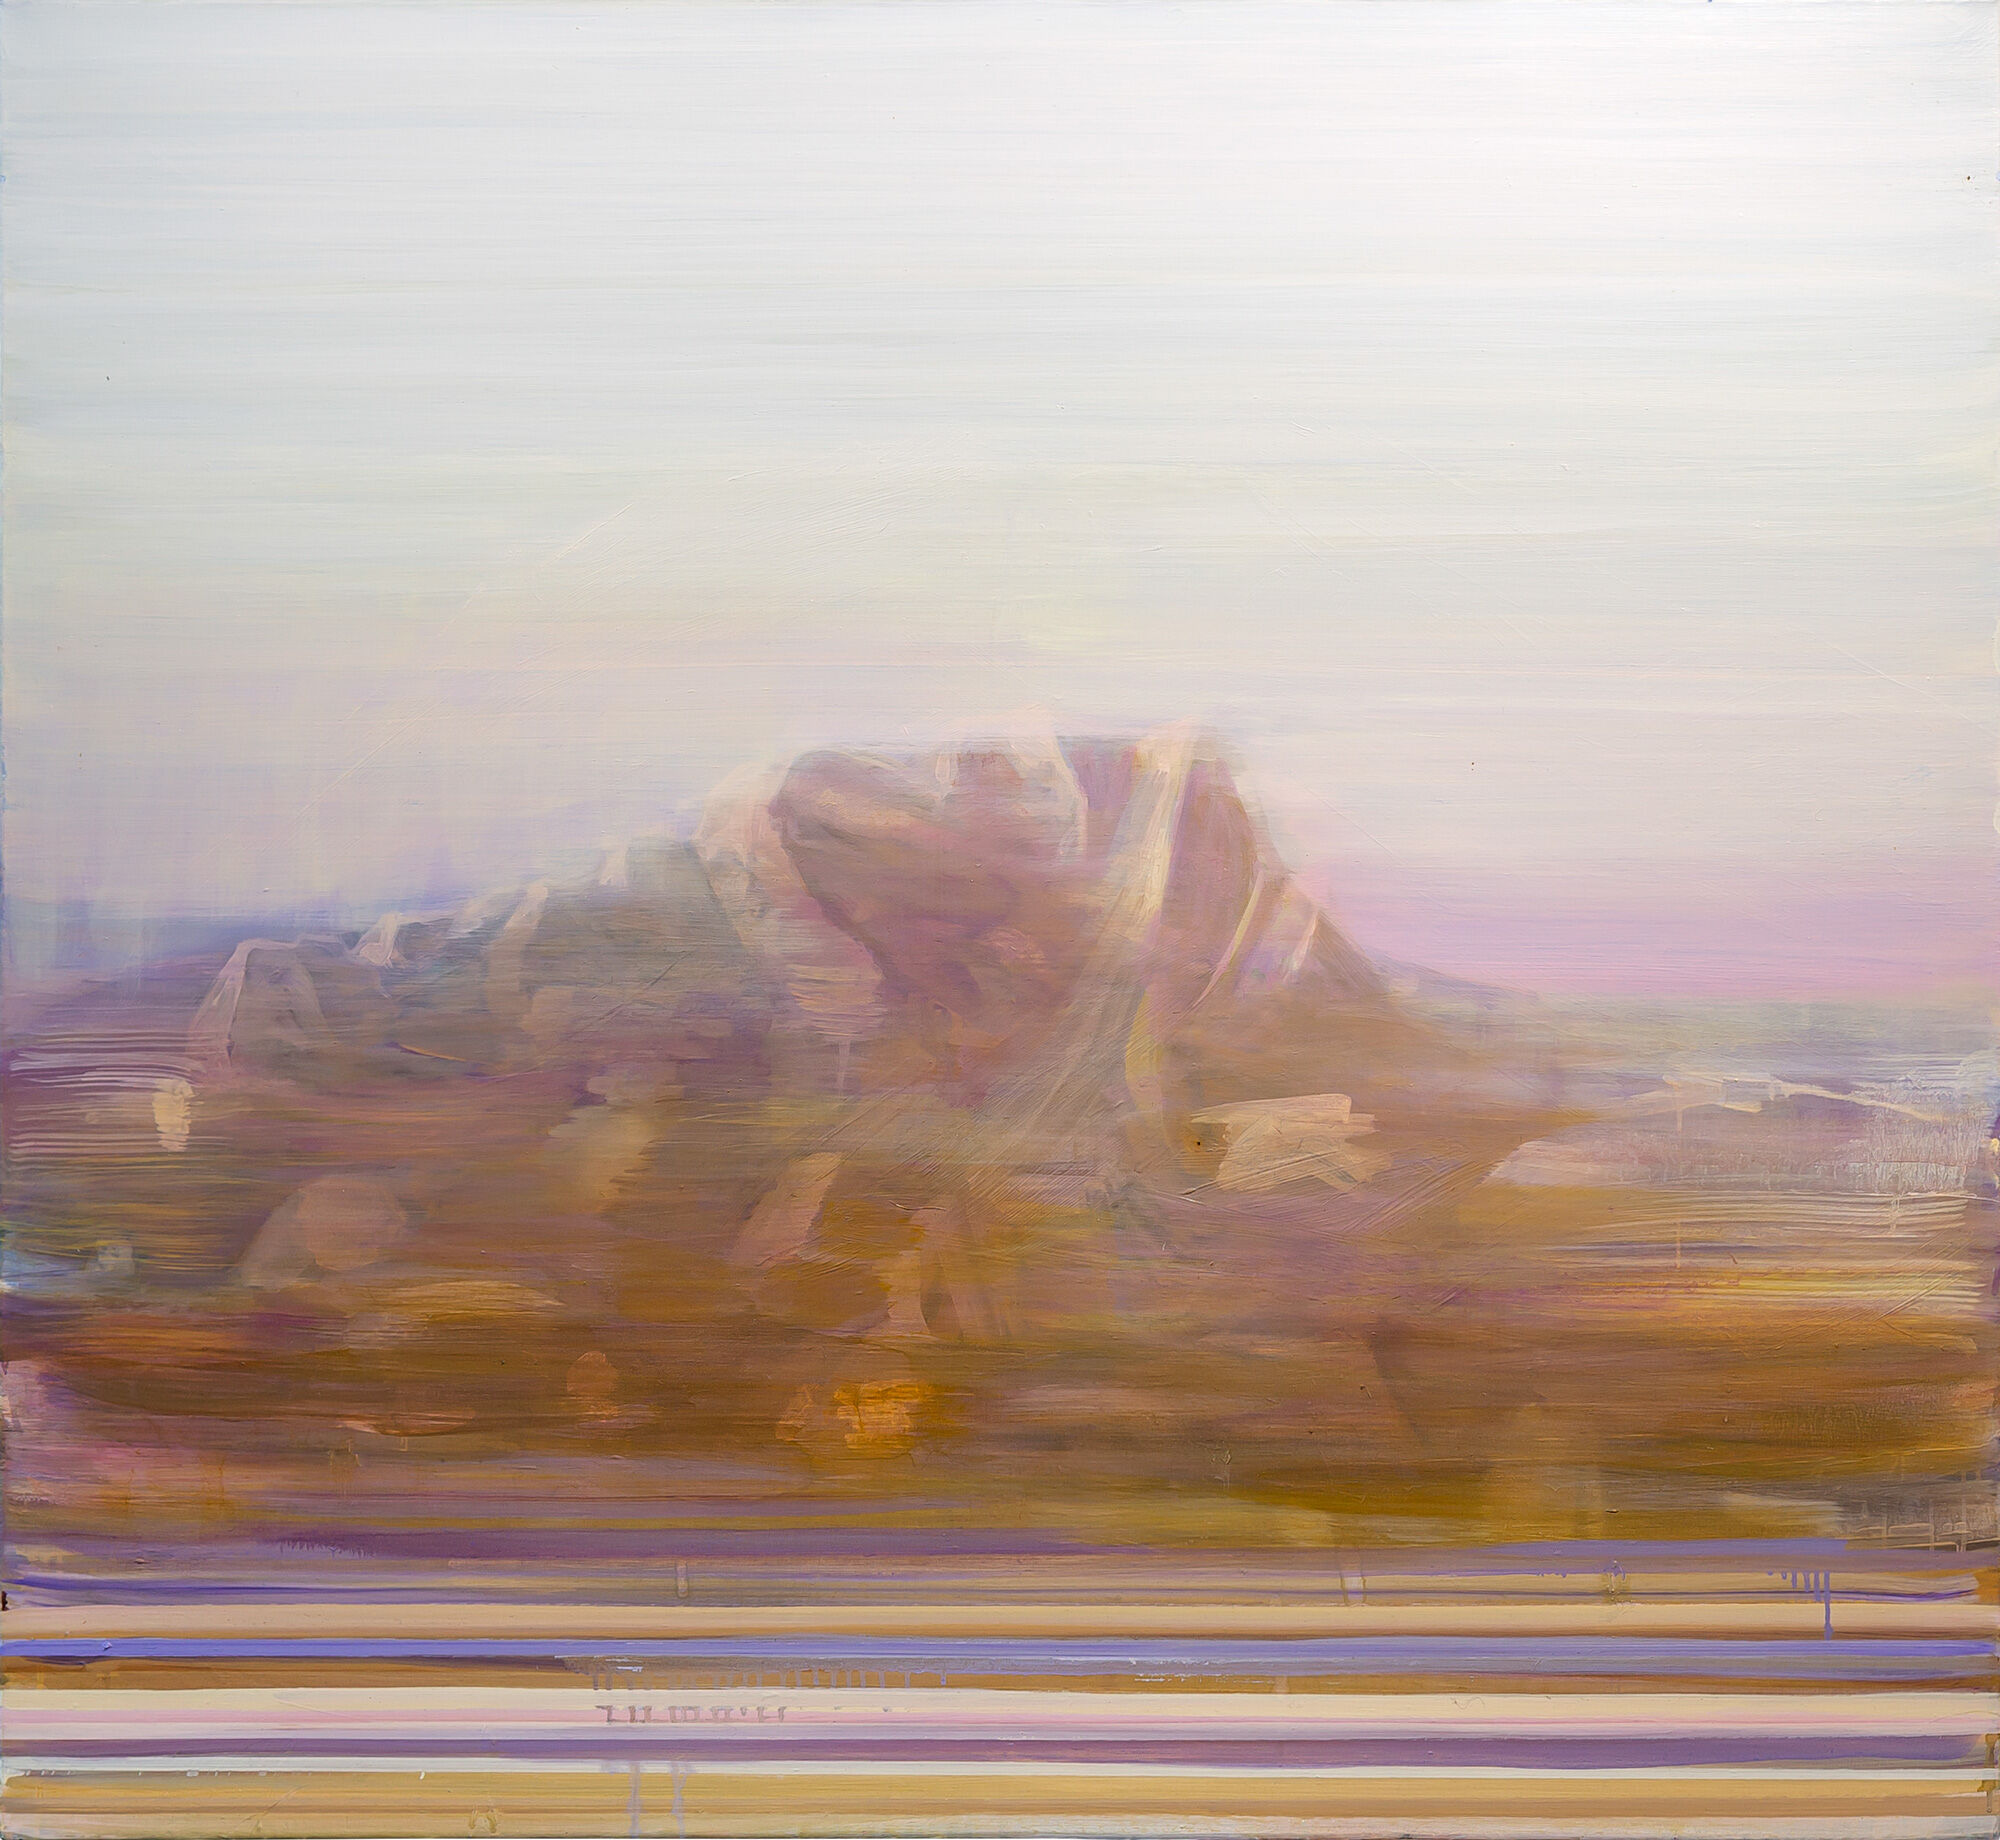 Billede "Mountain" (2020) (Unikt værk) von Mike Strauch